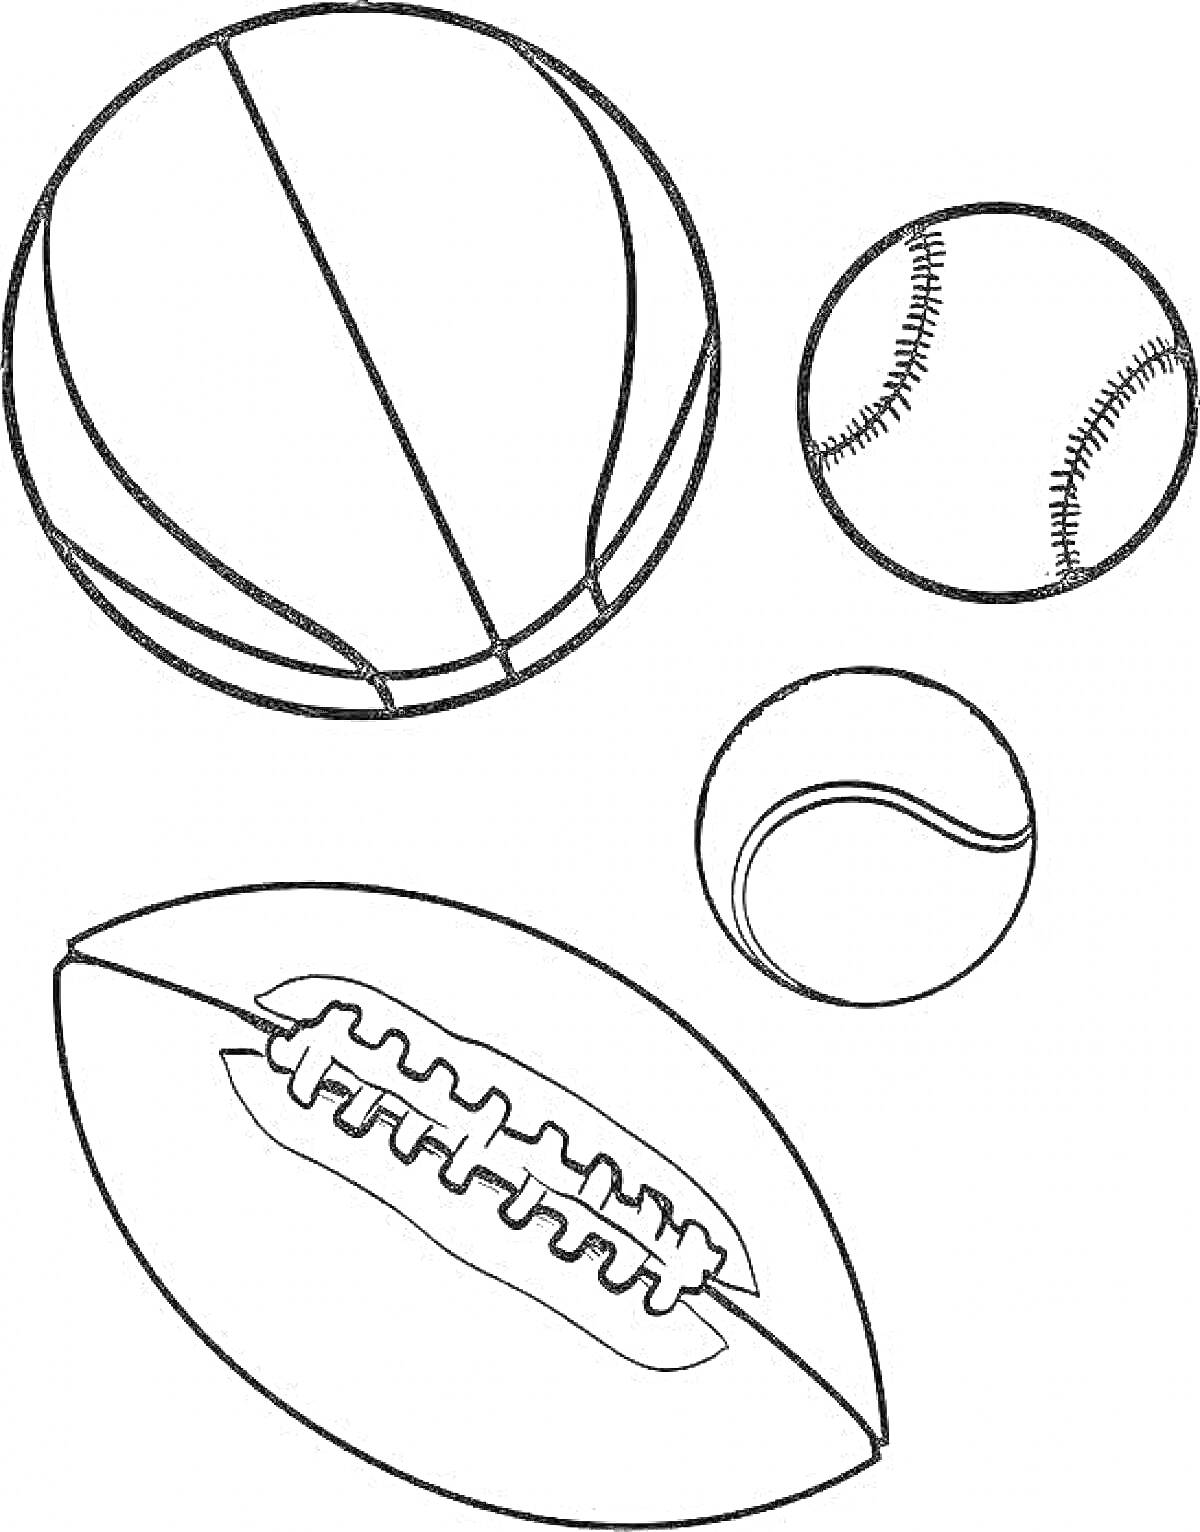 Раскраска Баскетбольный мяч, бейсбольный мяч, теннисный мяч, американский футбольный мяч